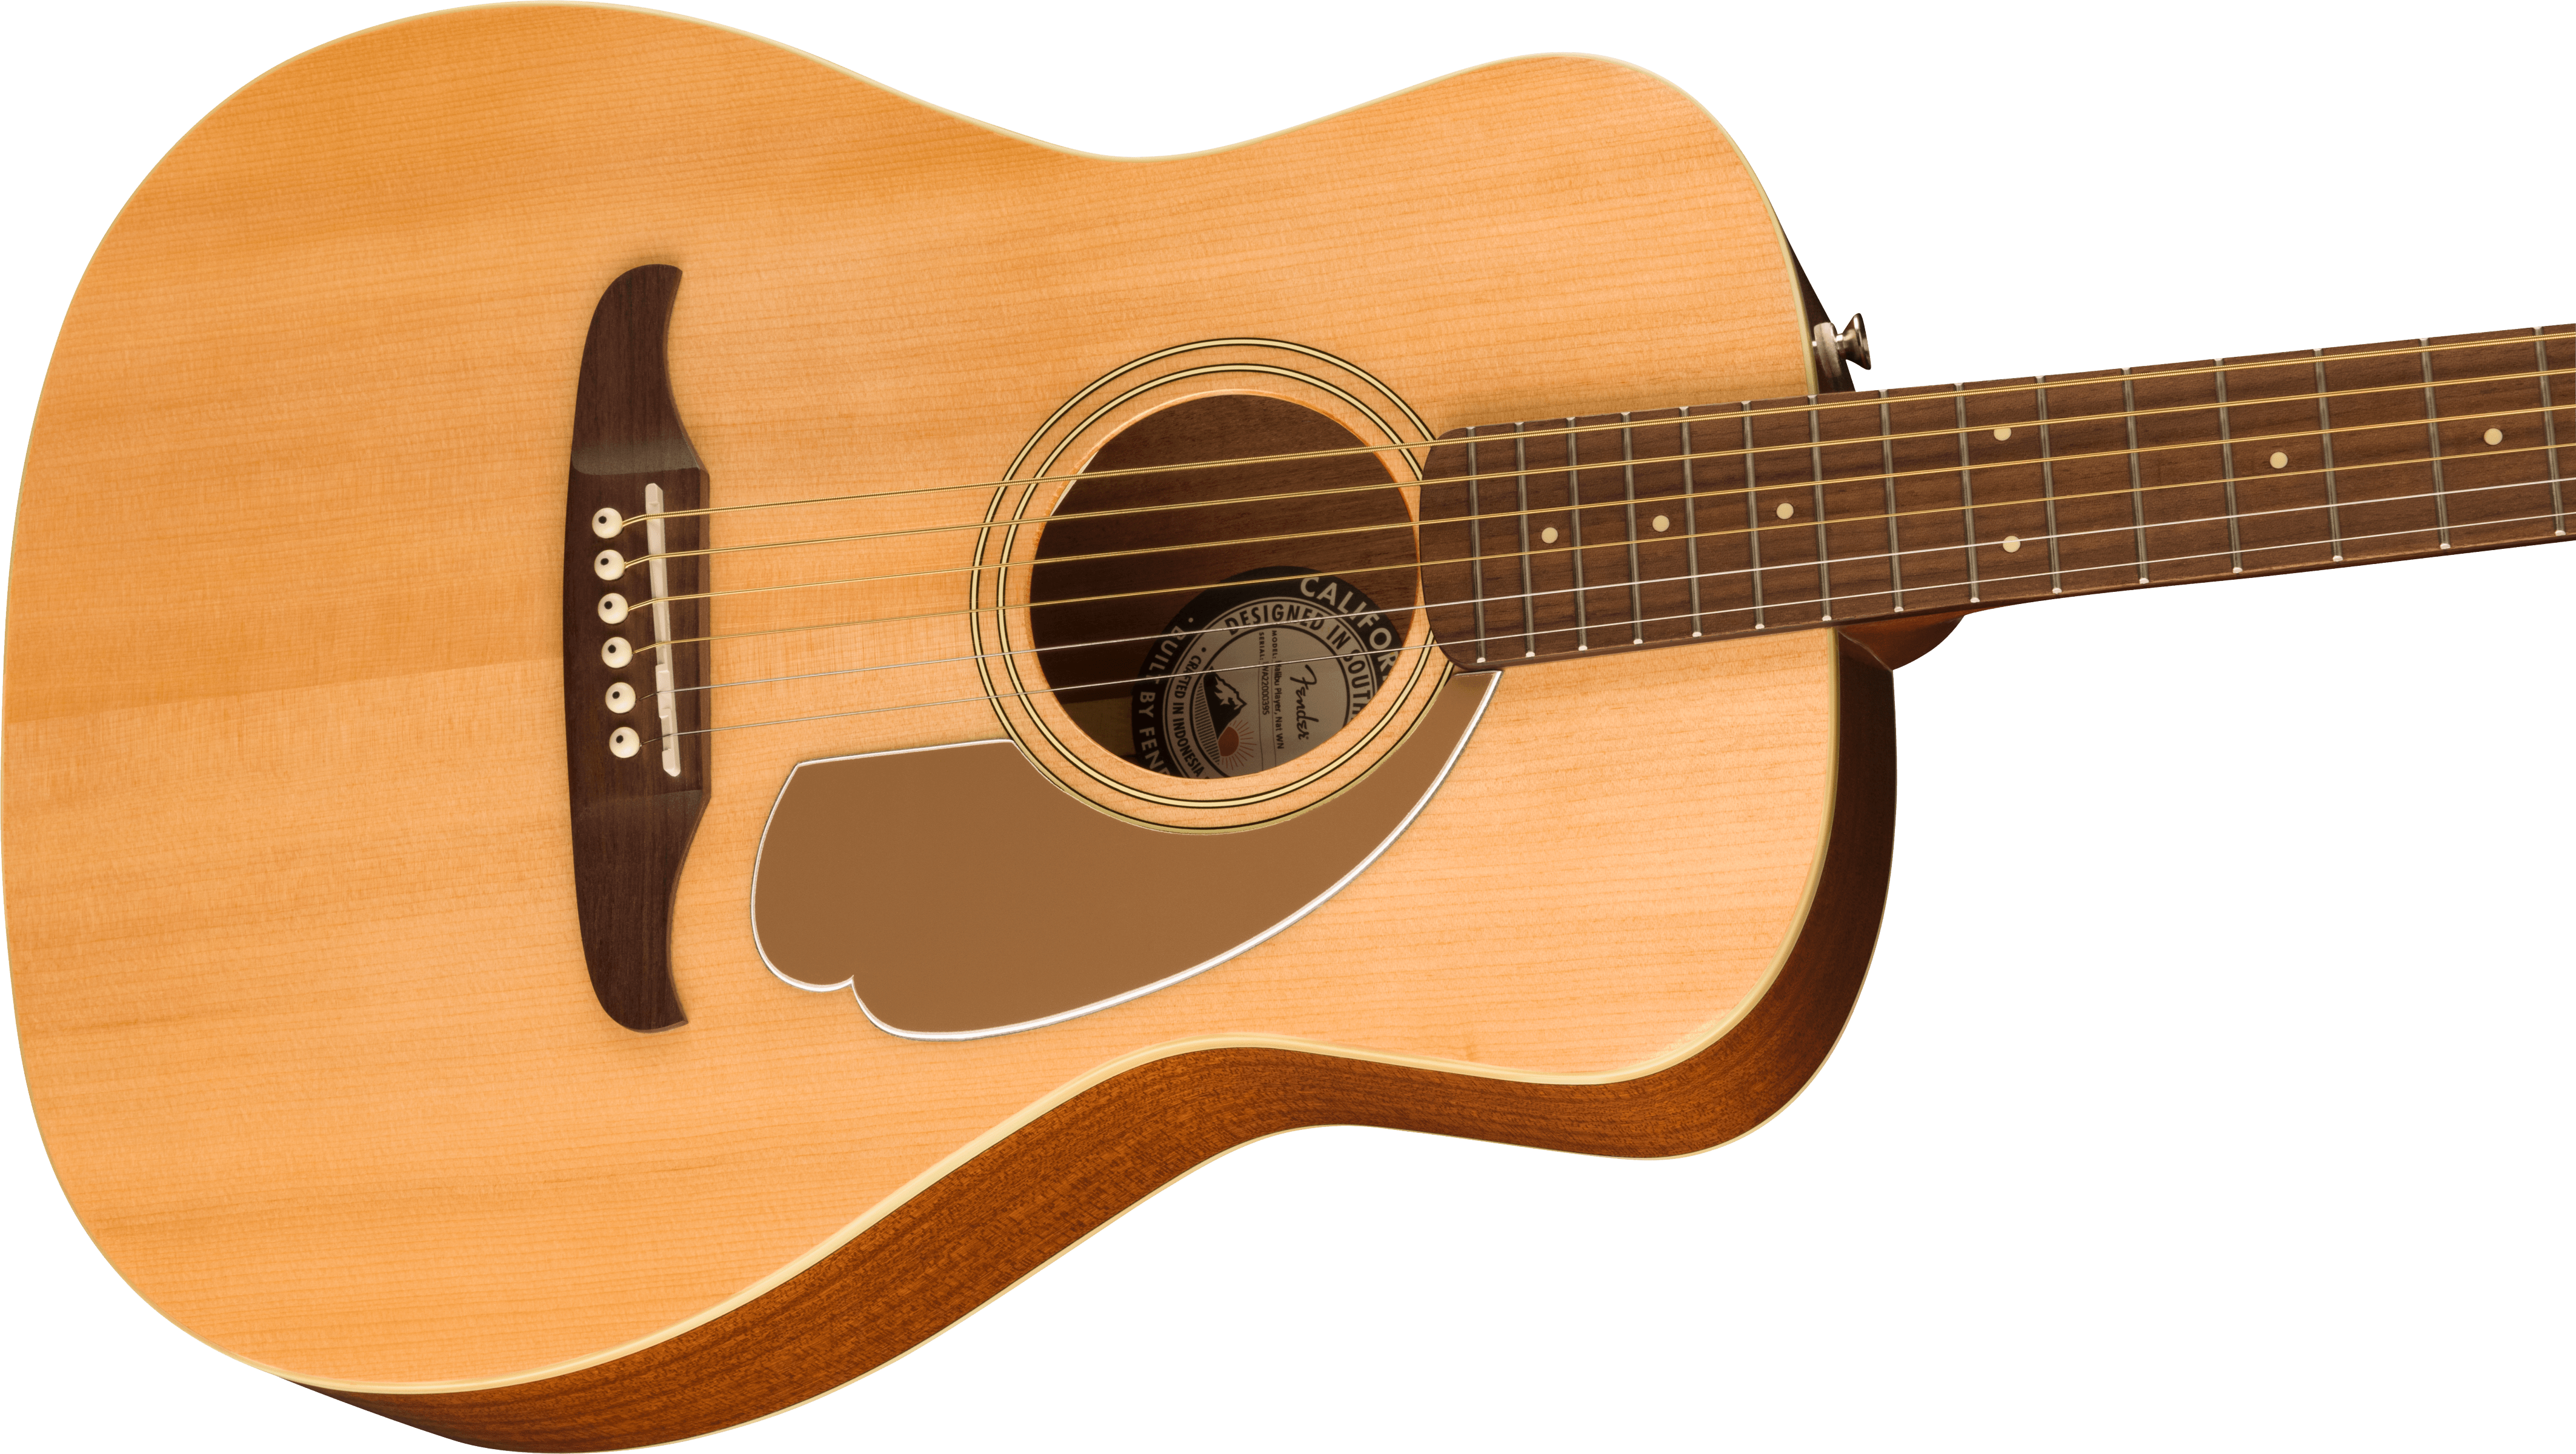 Fender California Series Malibu Player Acoustic-Electric Guitar, Natural